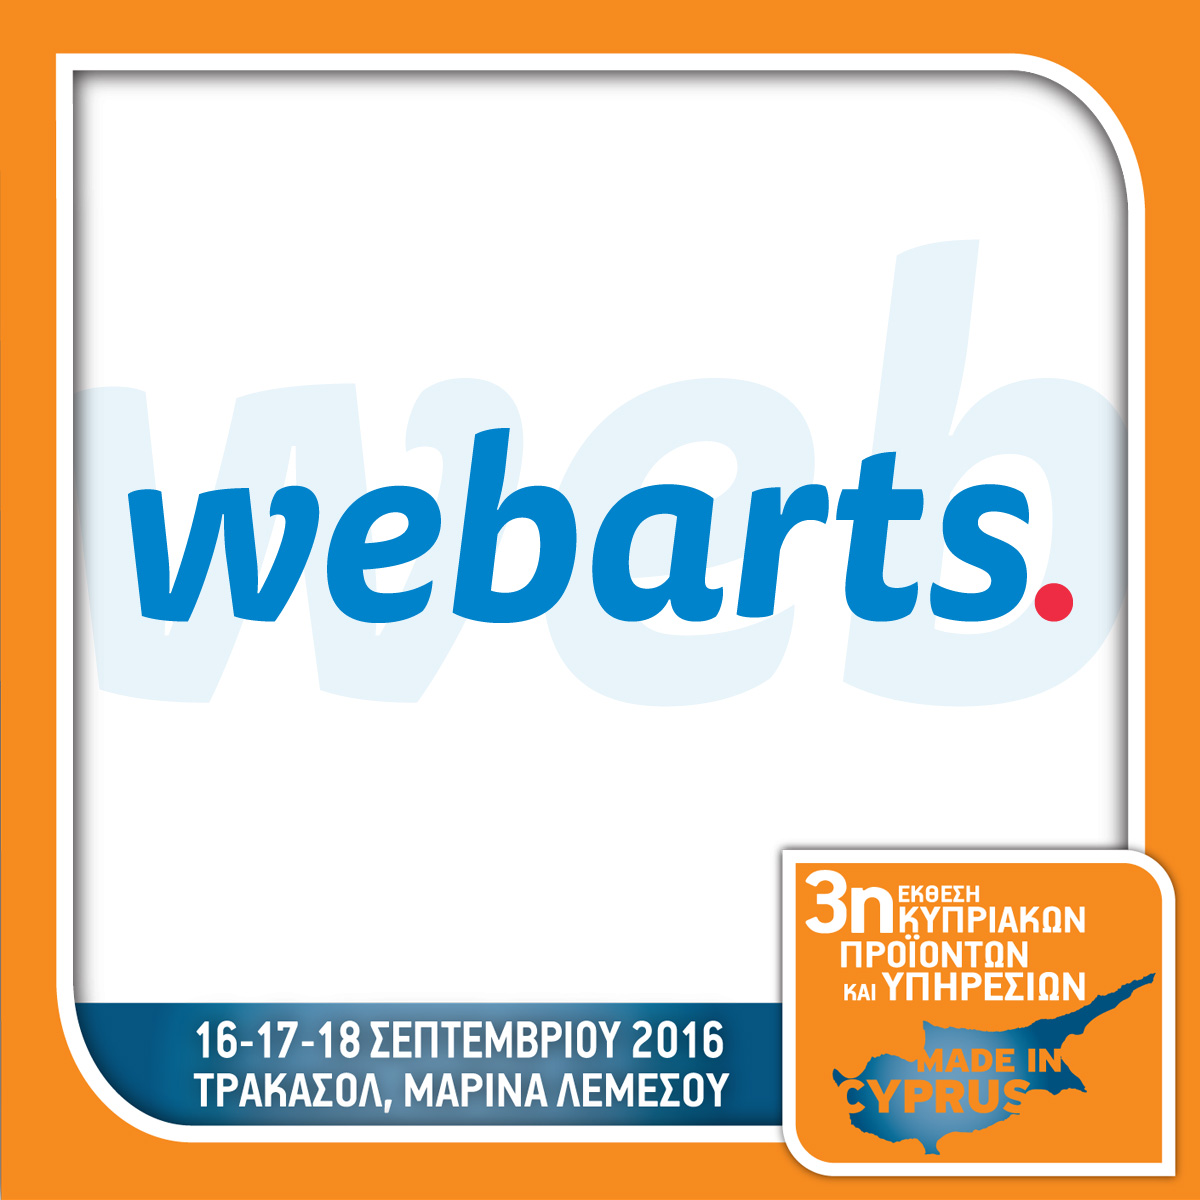 Webarts - Booth No 3